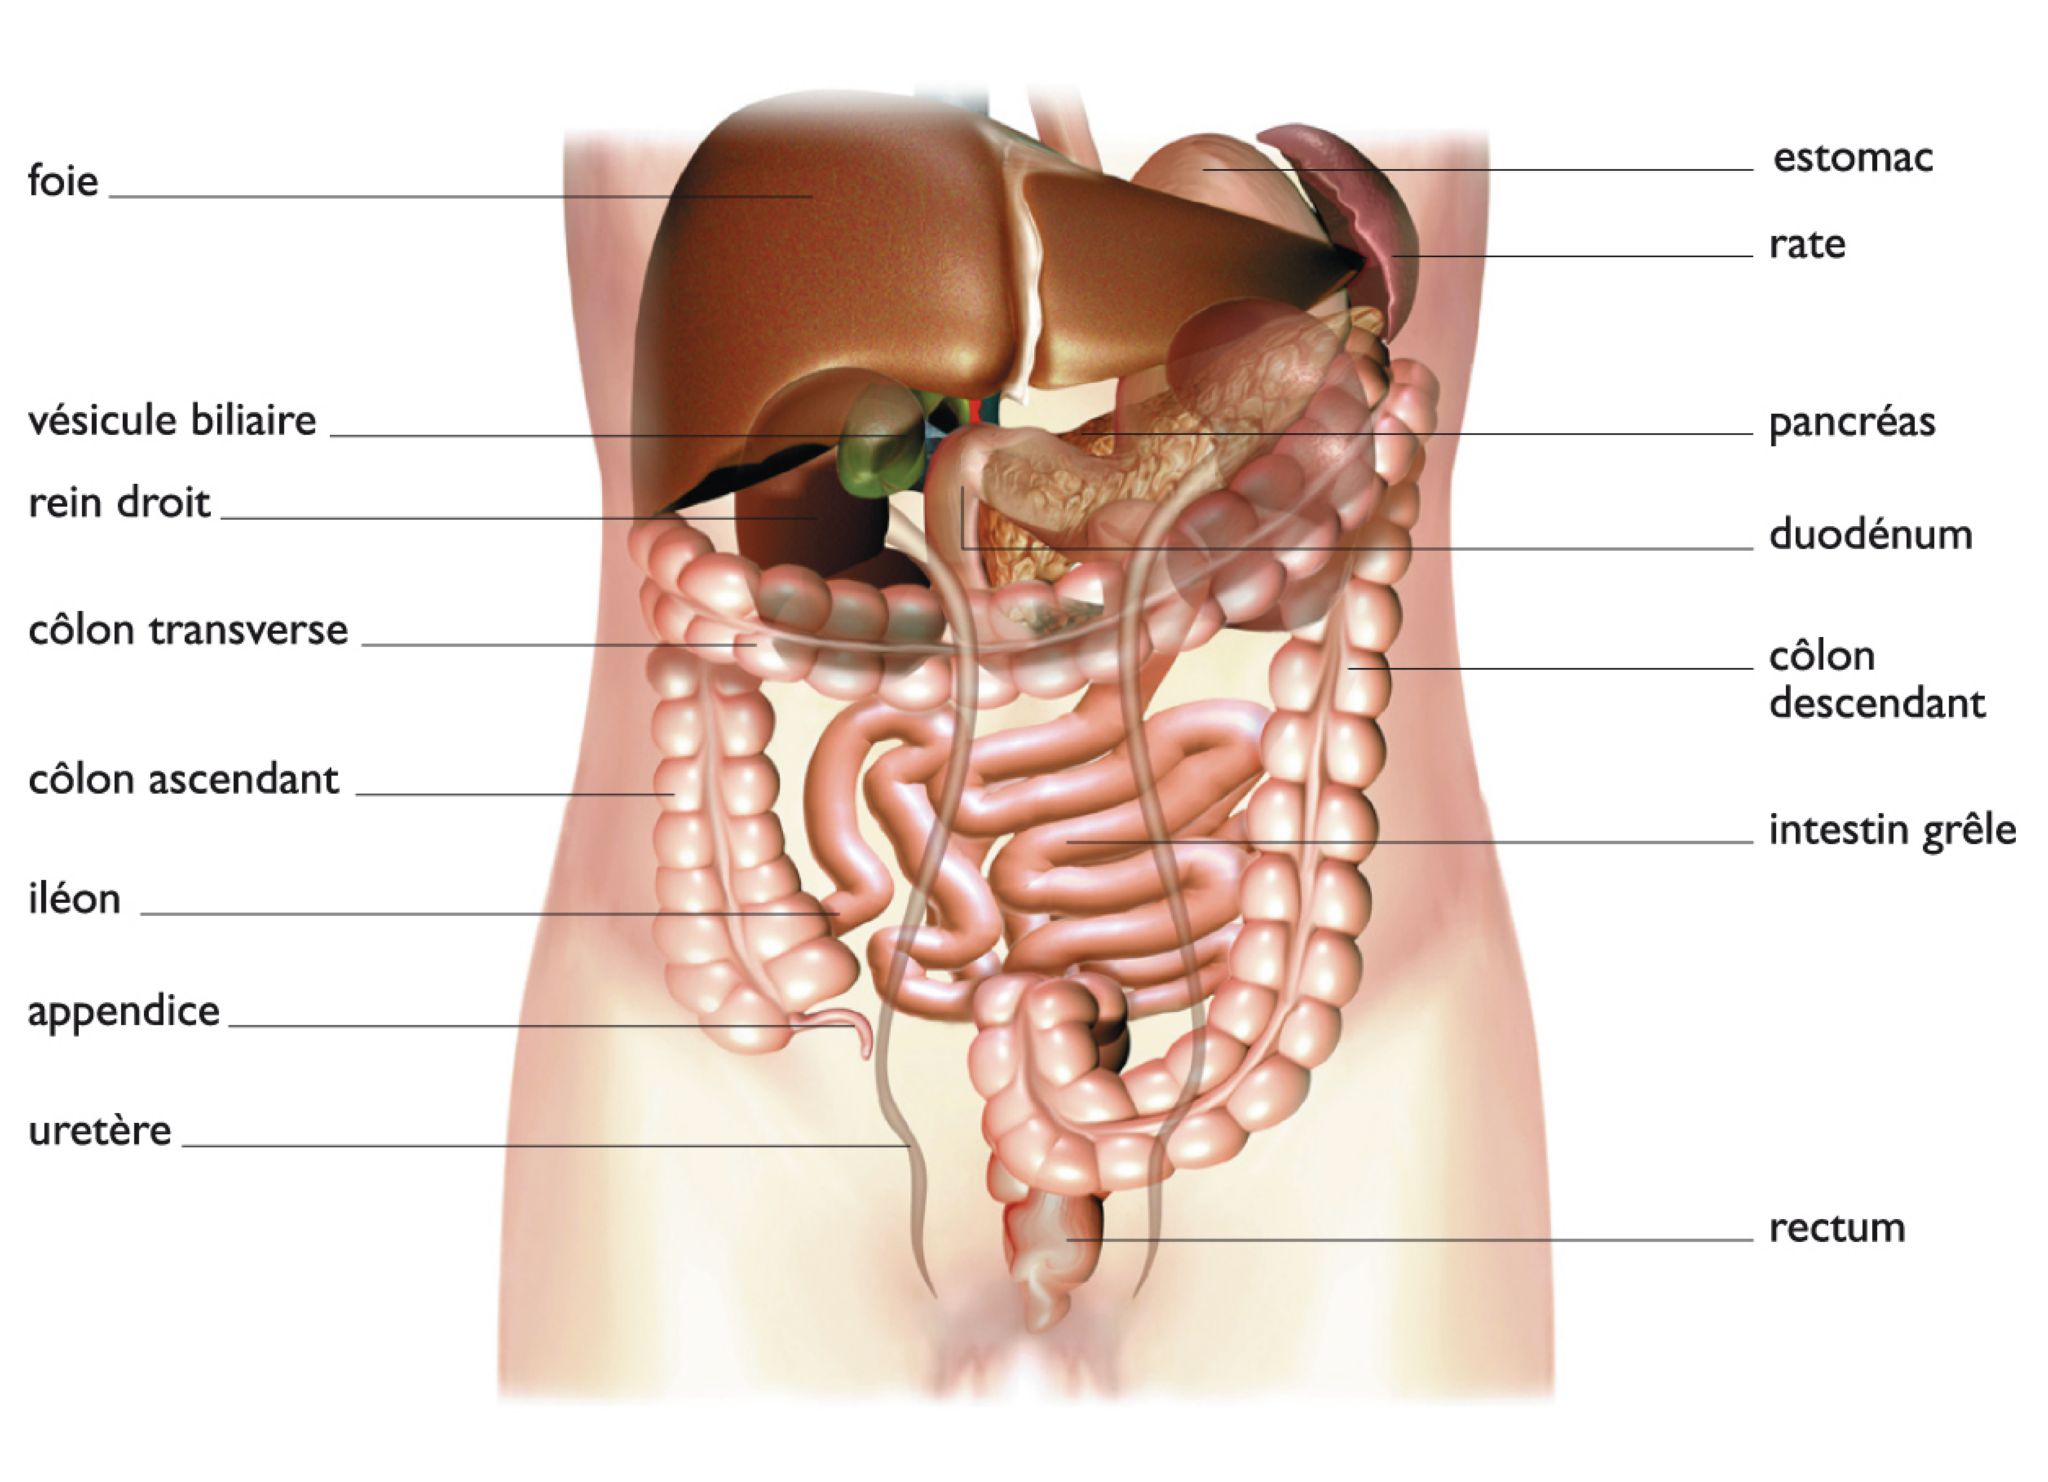 les principaux organes de l’abdomen